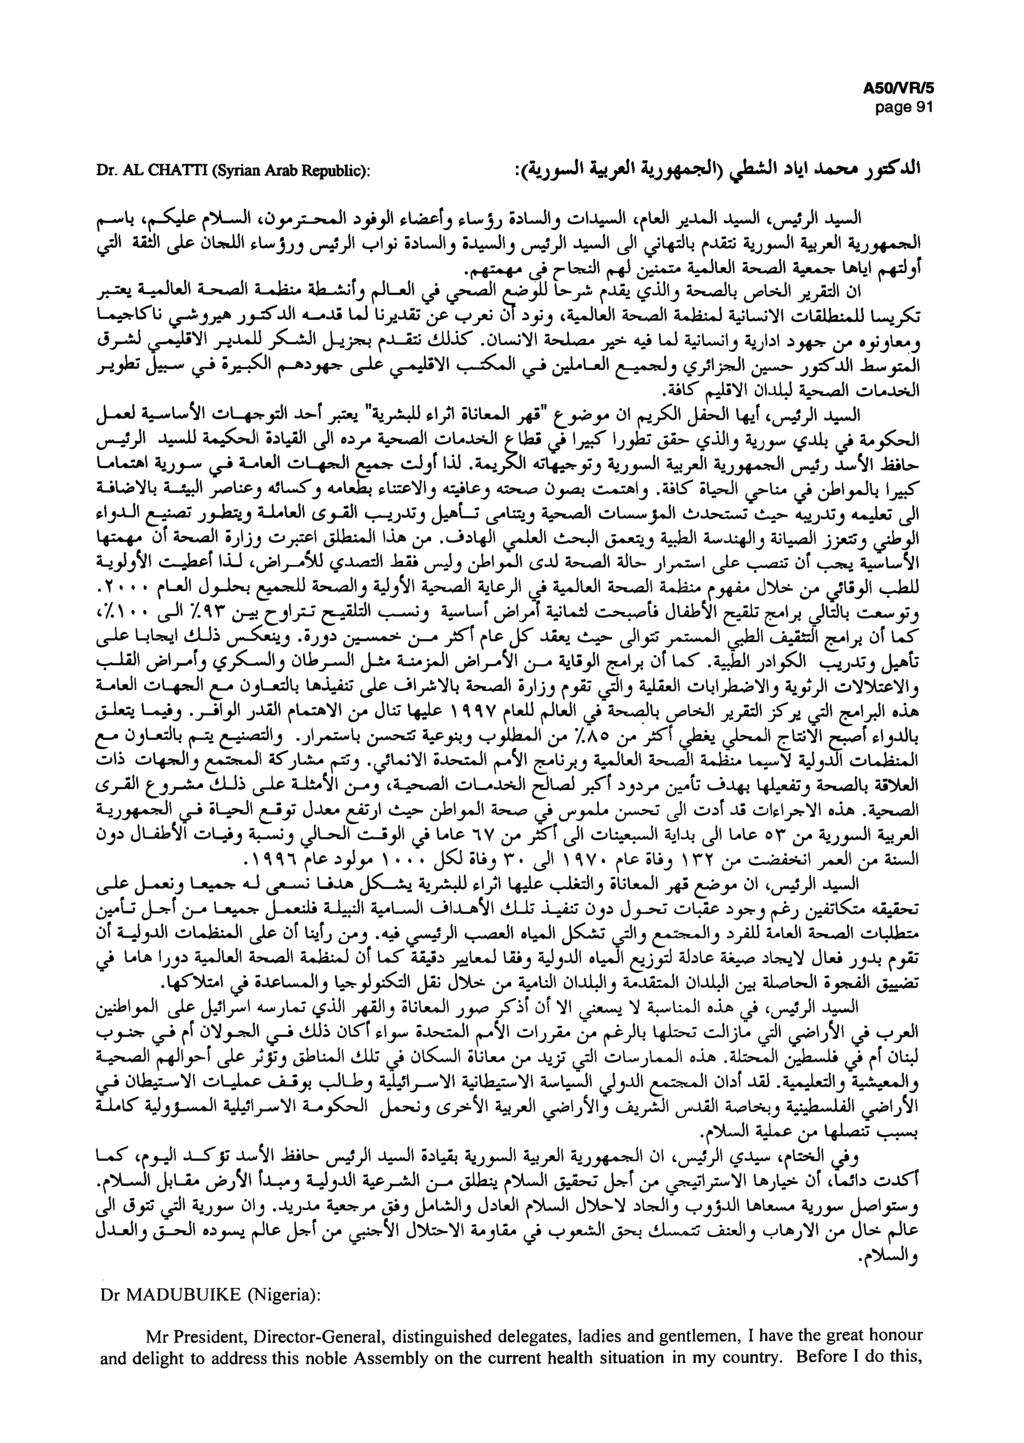 A50/VR/5 page 91 Dr. AL CHATTI (Syrian Arab Republic): :(Á jj-j( Â^yJl Ы Лллги» jjstjüí I» t^-xjip tûyj^mji f.làe-ïj (.